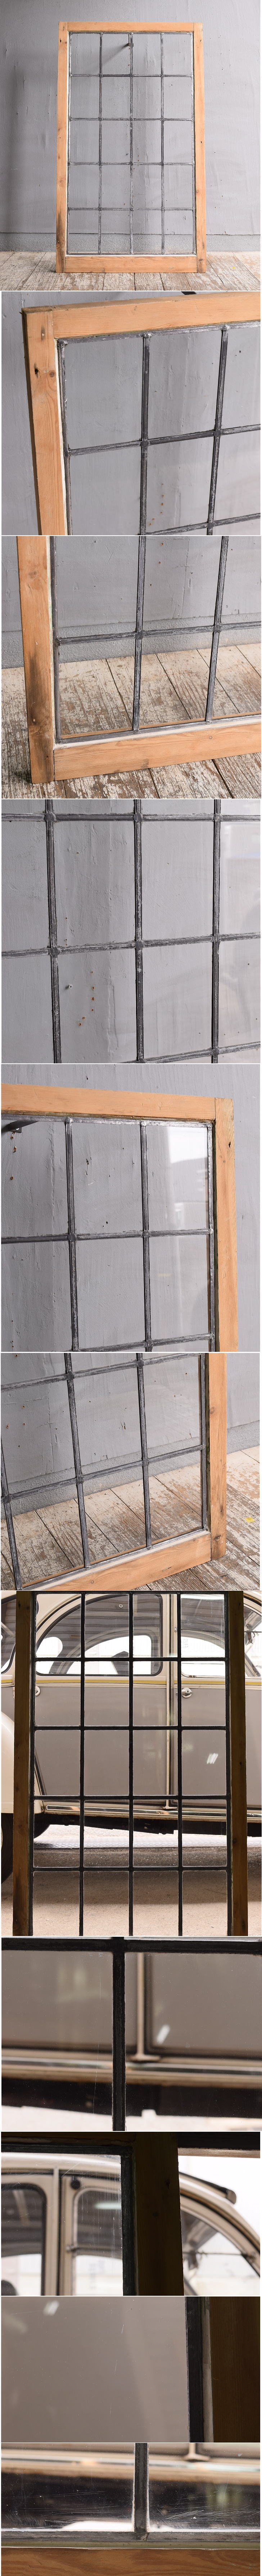 イギリス アンティーク 窓 無色透明 11692